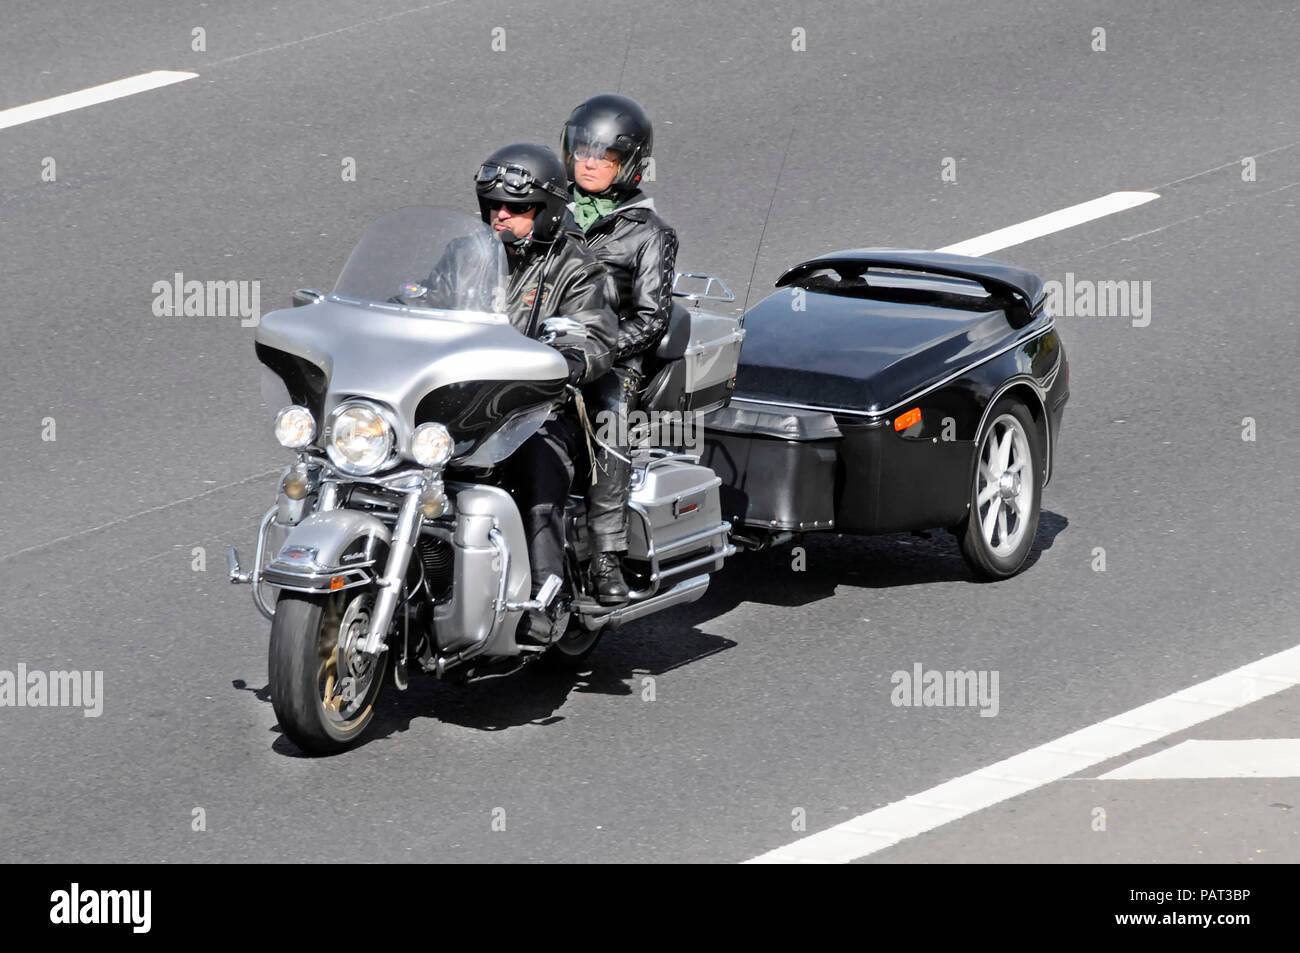 Männliche Motorradfahrer tragen Mikrofon & Frau reiten Motorrad Sozius Paar tragen Helm abschleppen ungewöhnliche Anhänger Auf de Autobahn Stockfoto